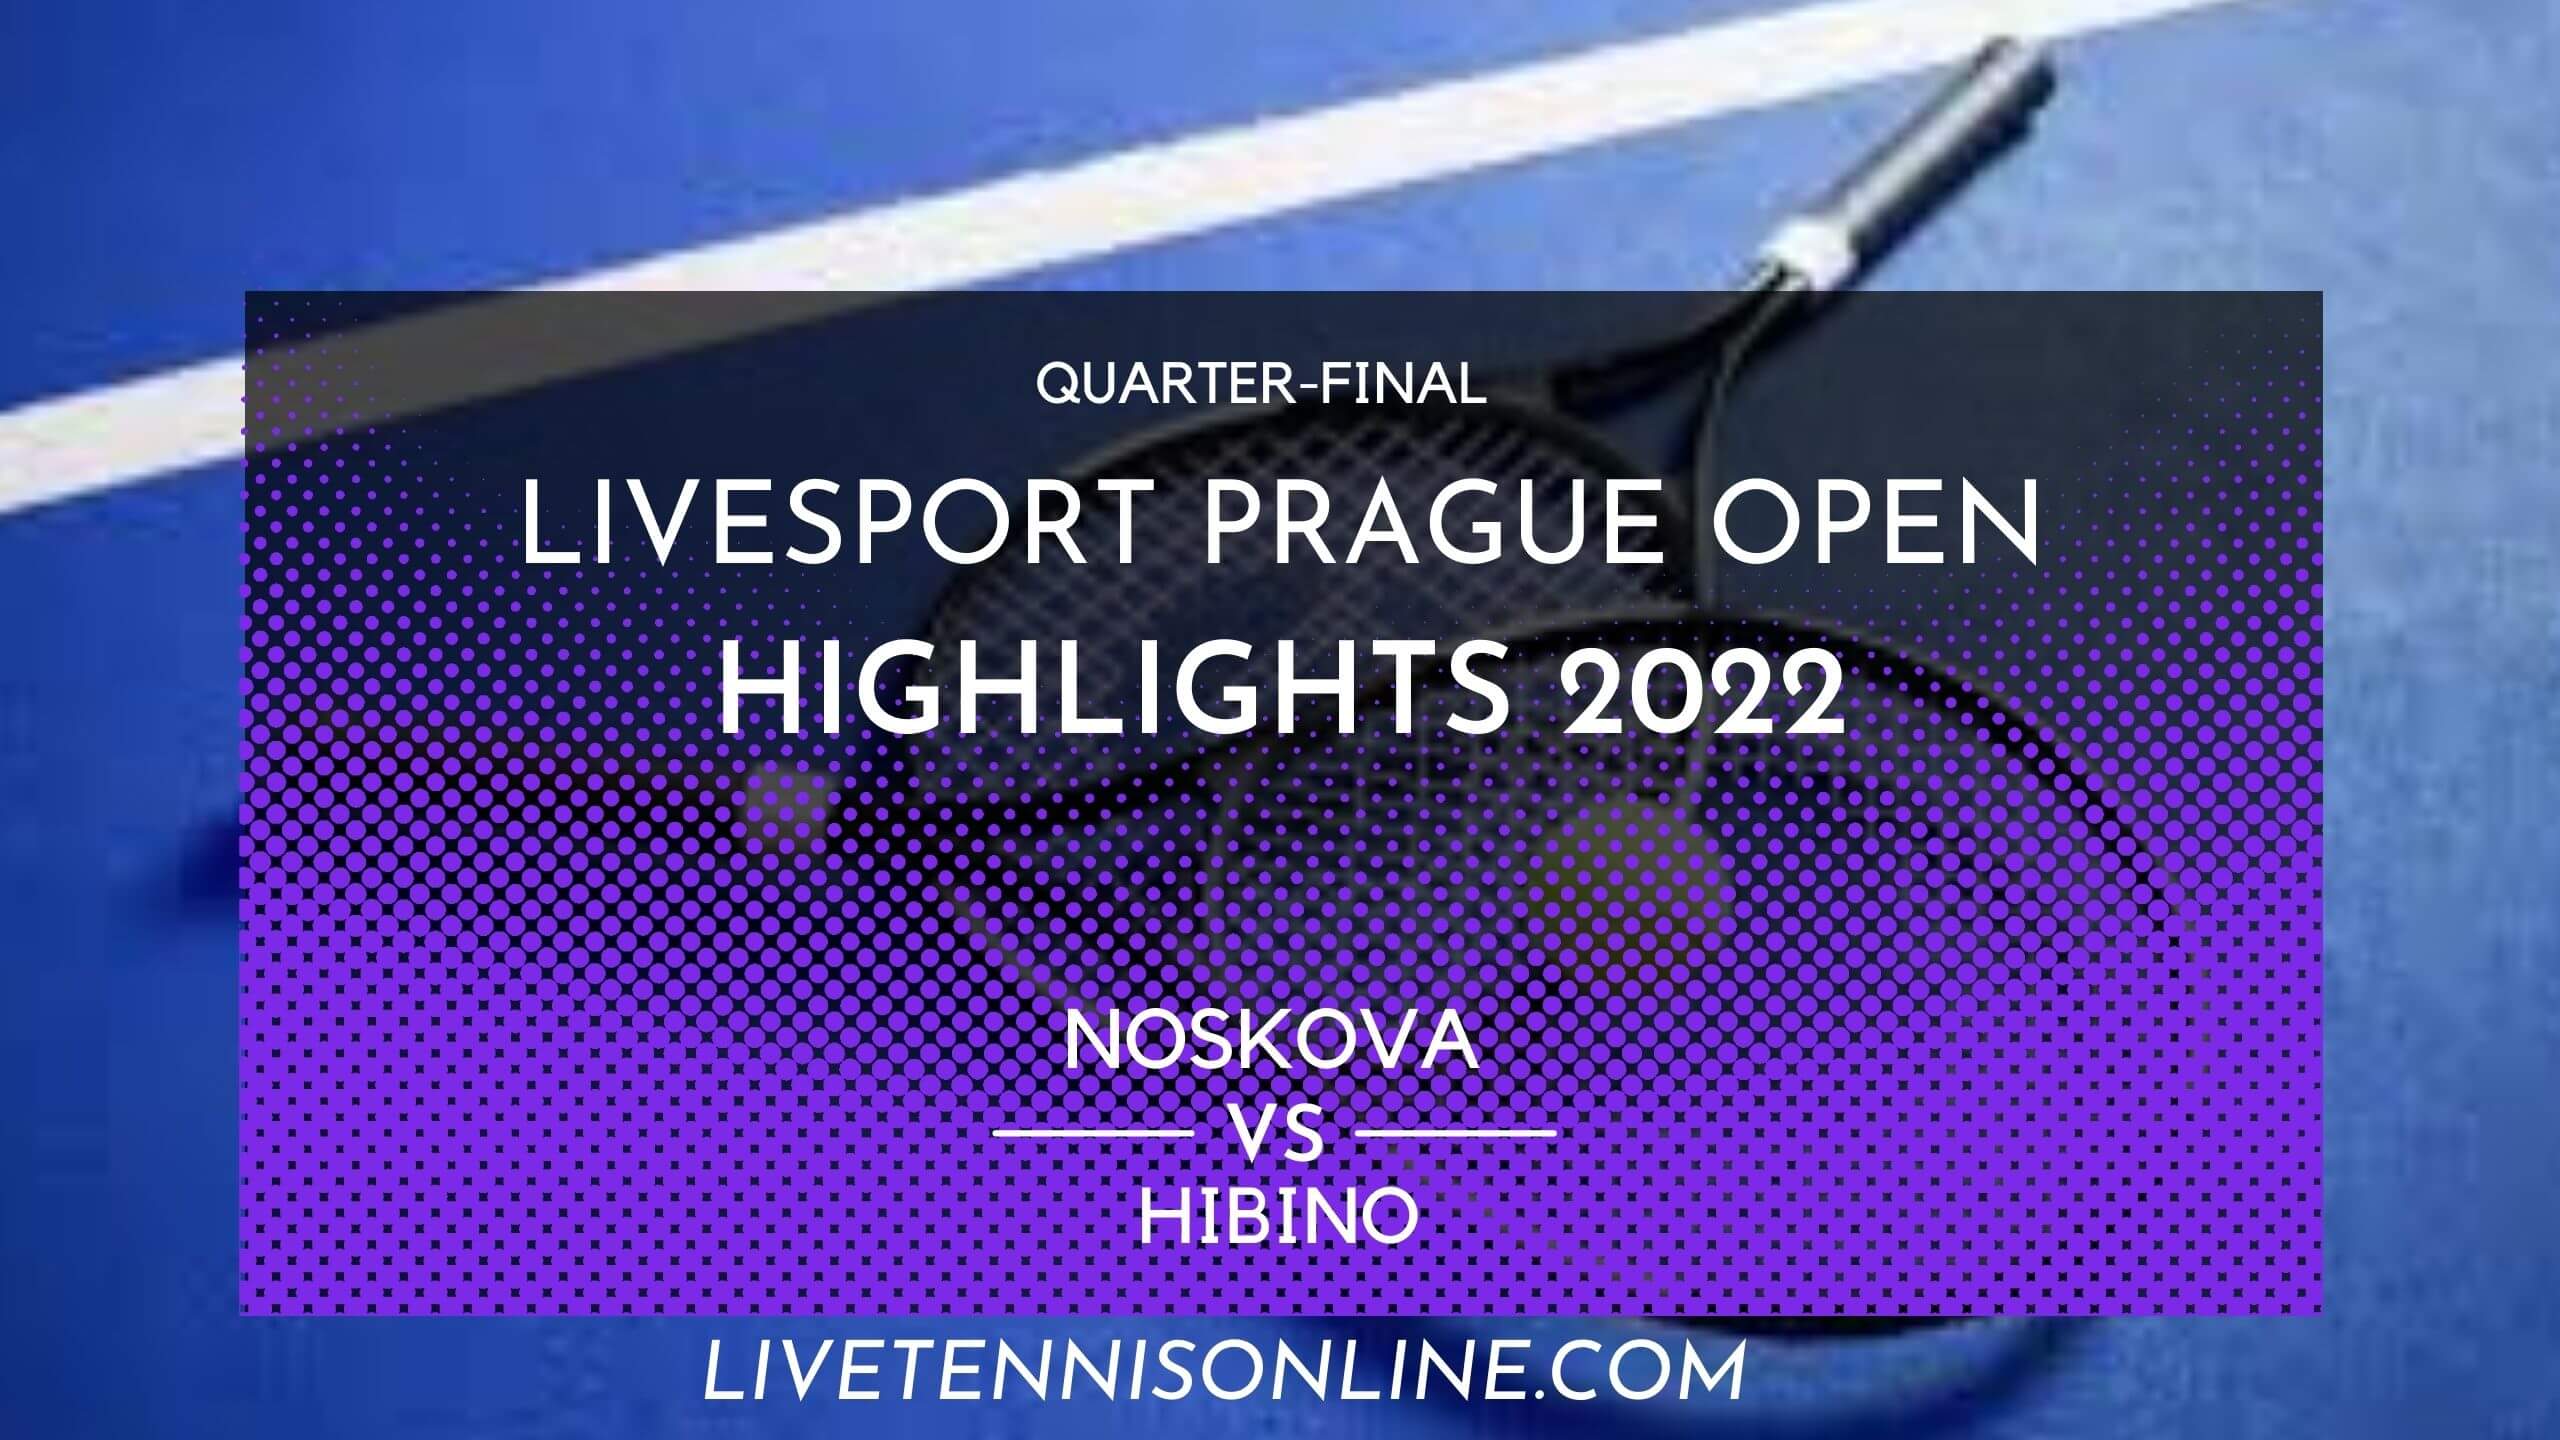 Noskova Vs Hibino QF Highlights 2022 Prague Open